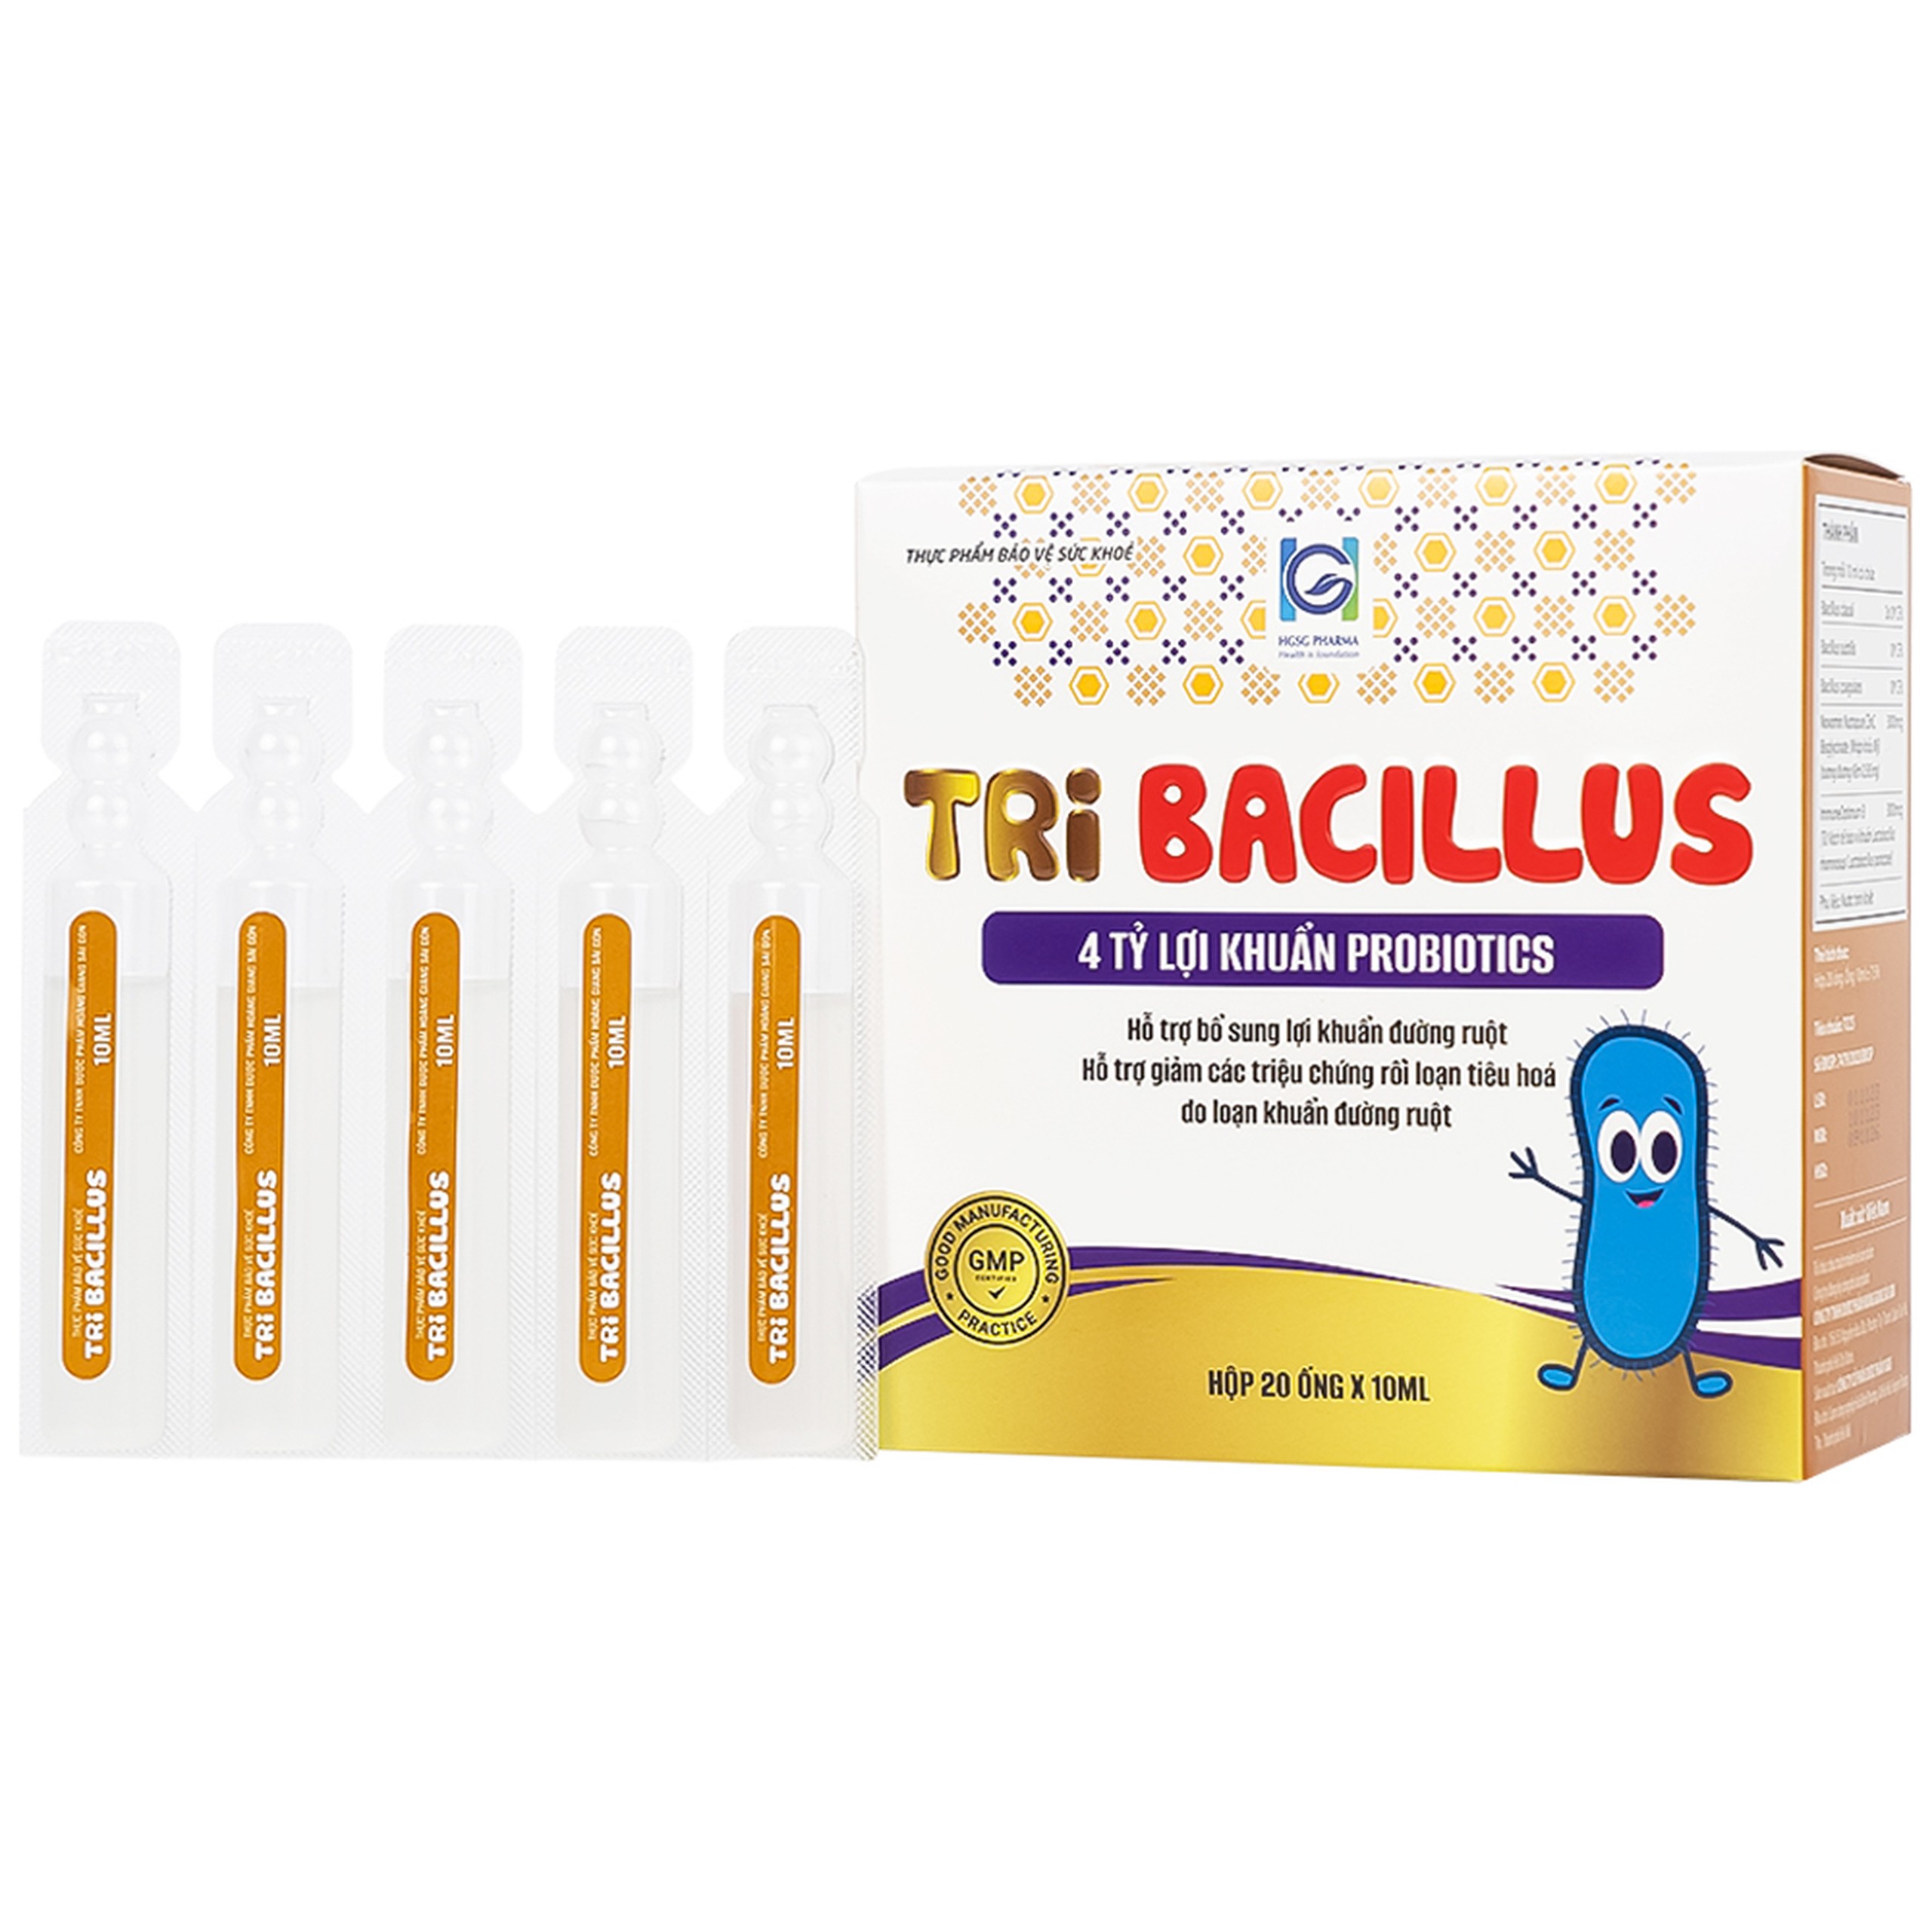 Thực phẩm bảo vệ sức khỏe Probiotics Tribacilus HGSG Pharma hỗ trợ bổ sung lợi khuẩn đường ruột (20 ống x 10ml)